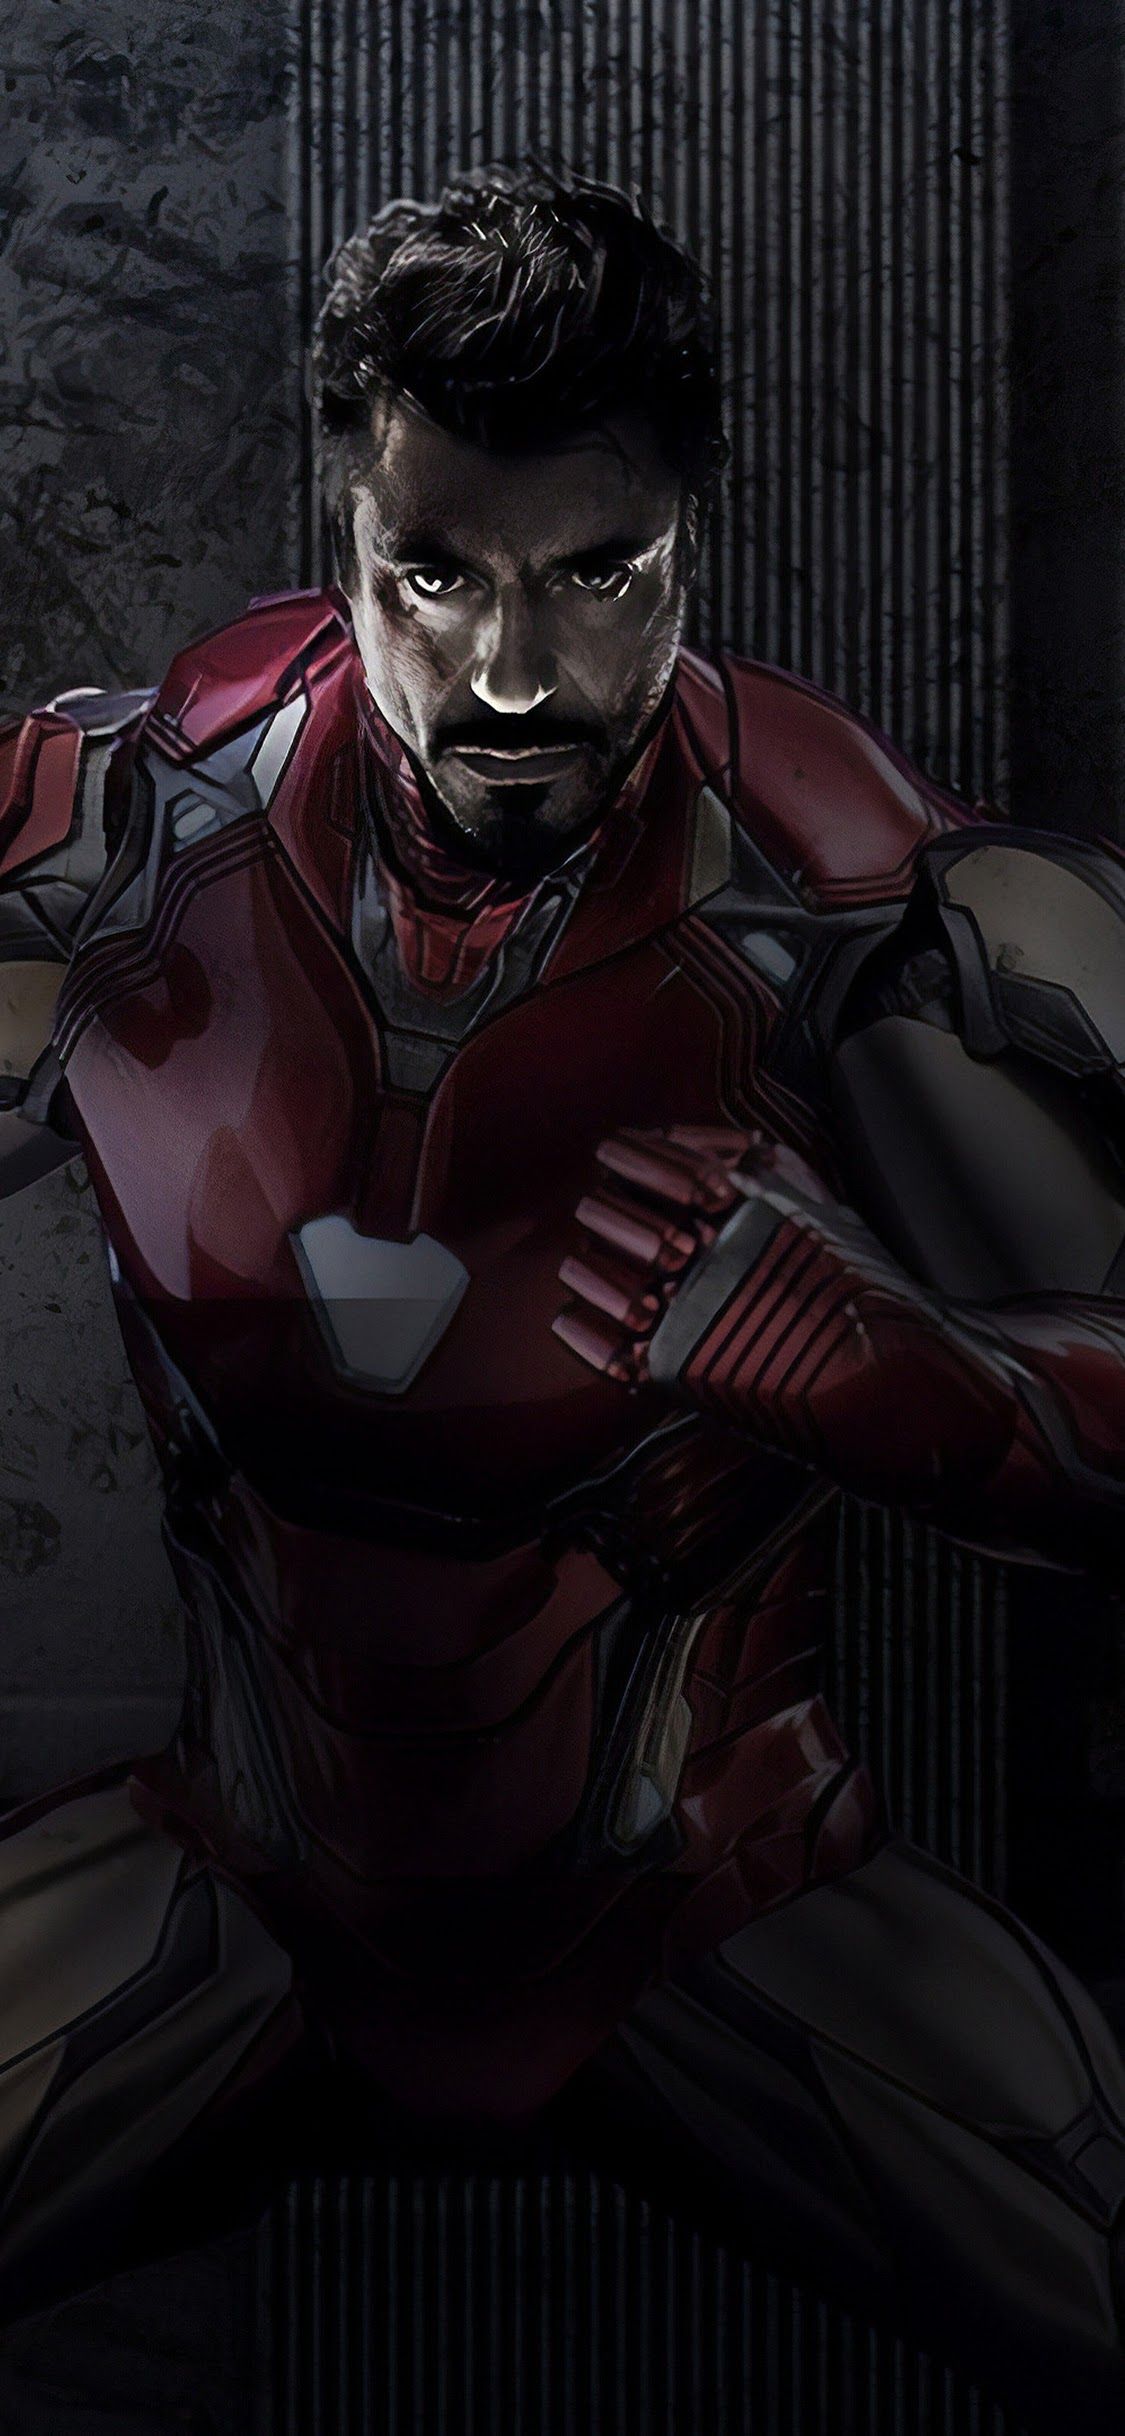 Iron Man Tony Stark Avengers Endgame 4K Wallpaper